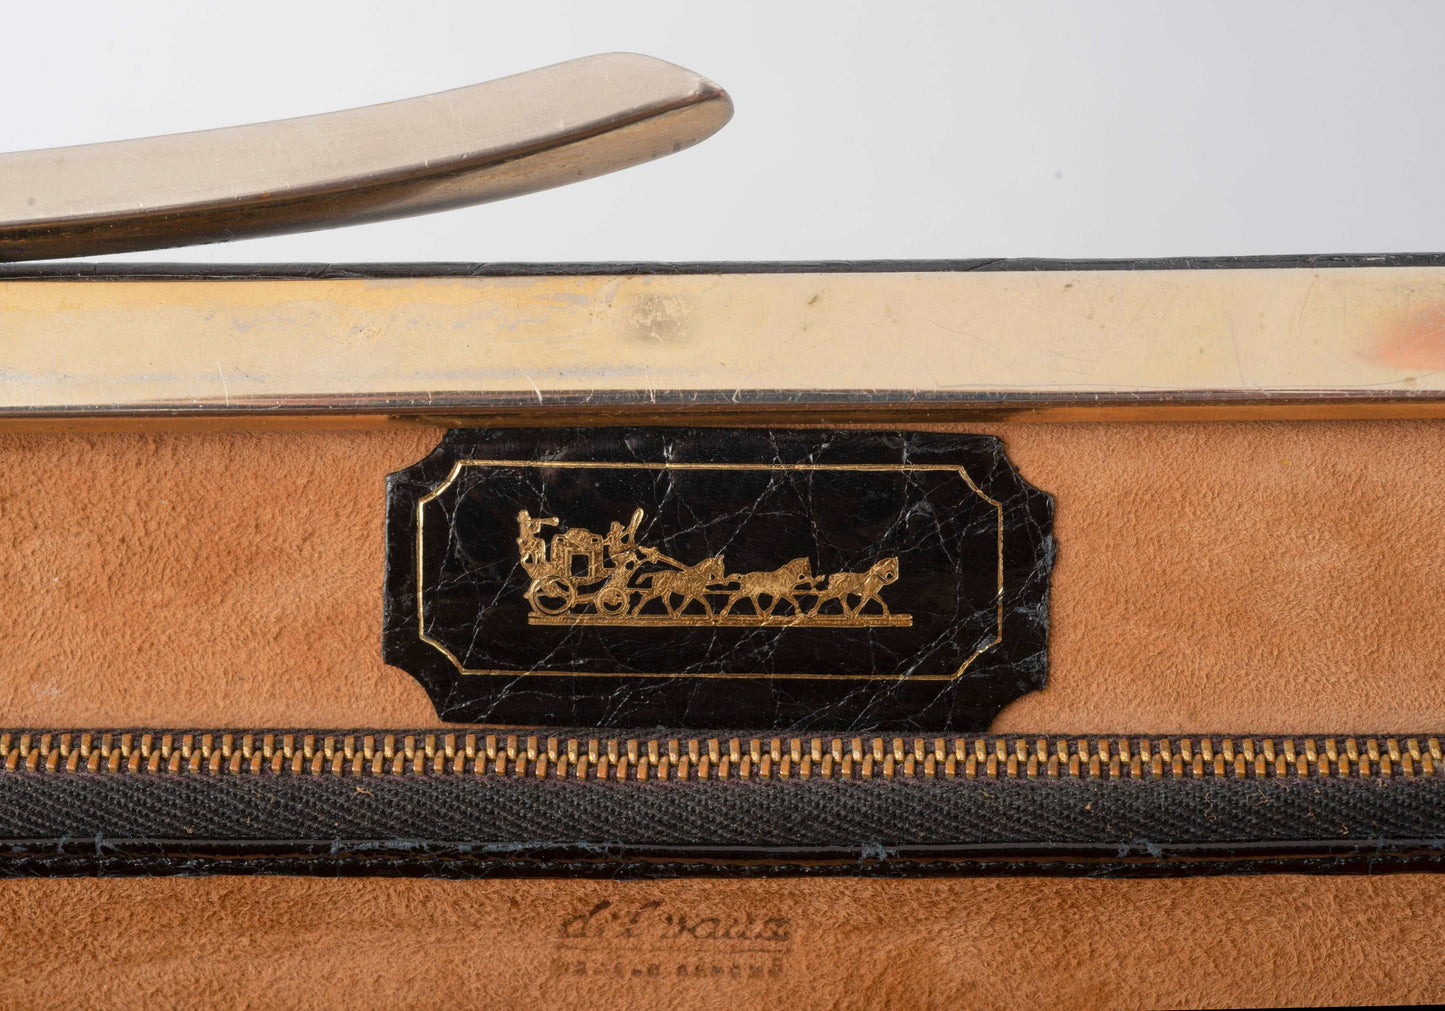 Delvaux vintage handbag in croco leather 1960